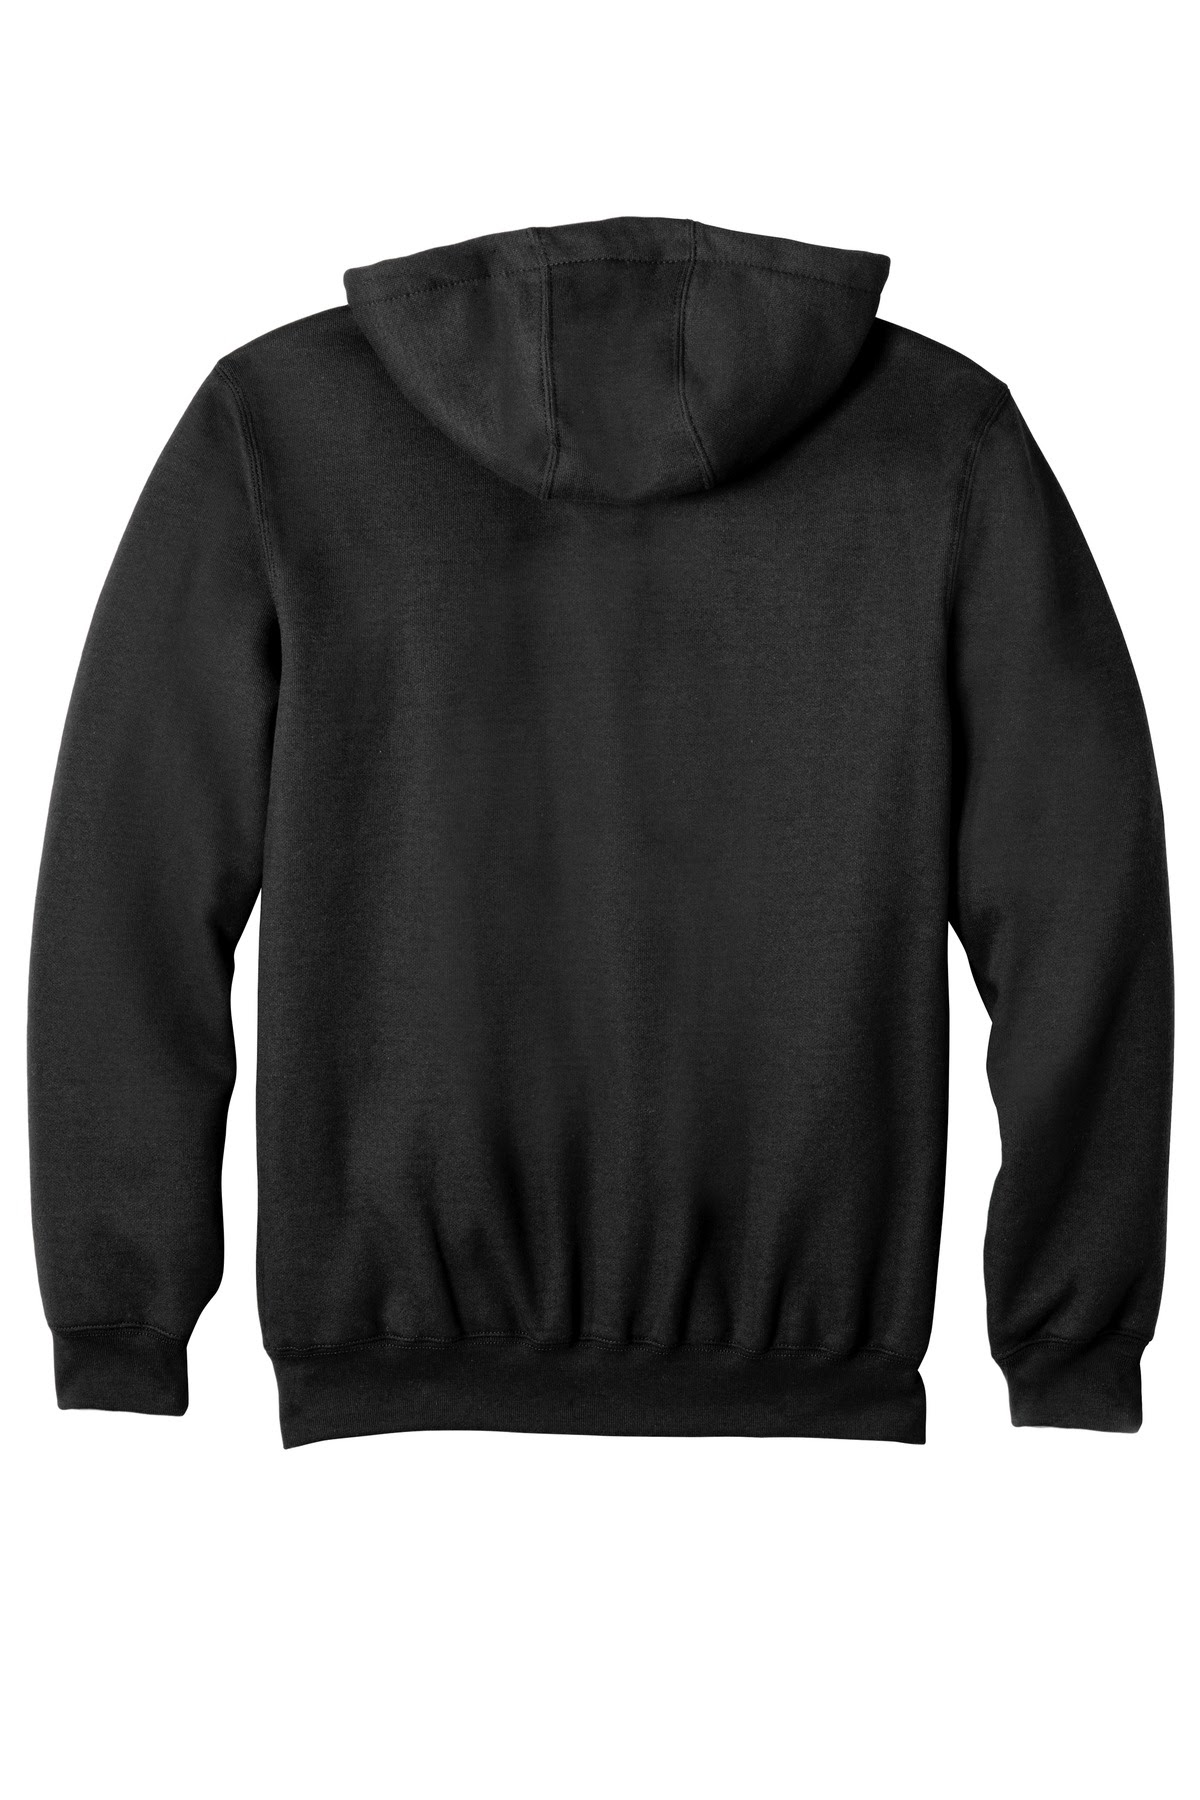 Download Download Full-Zip Hooded Sweatshirt - Front View Of Hoodie